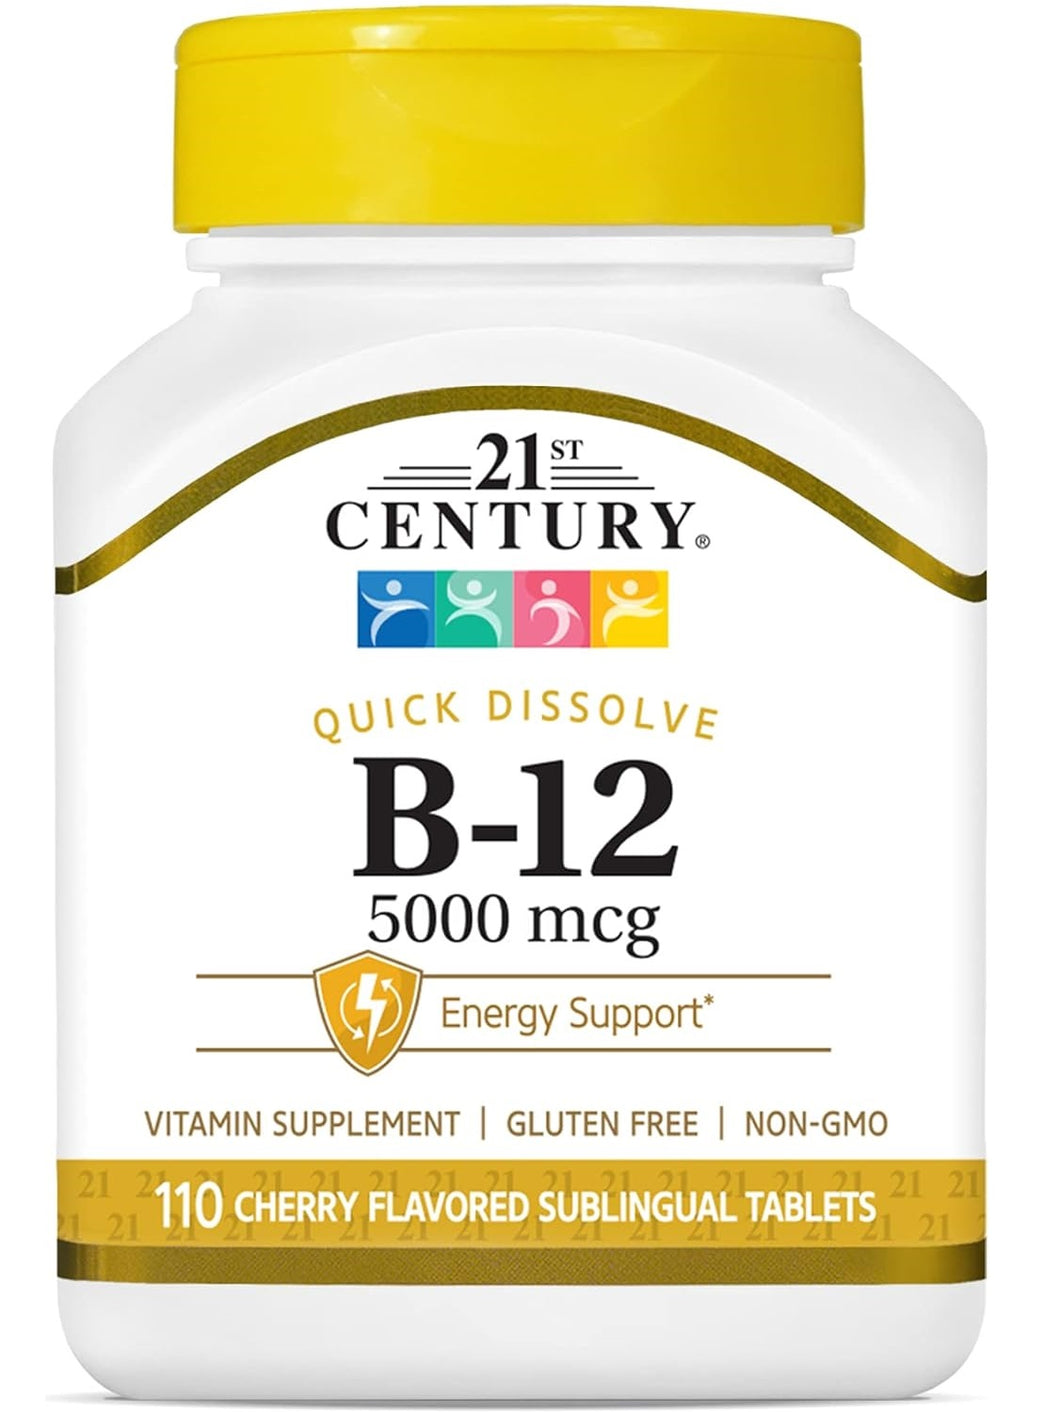 Vitamina B12, 500 mcg, 21 Century, 110 tabletas.